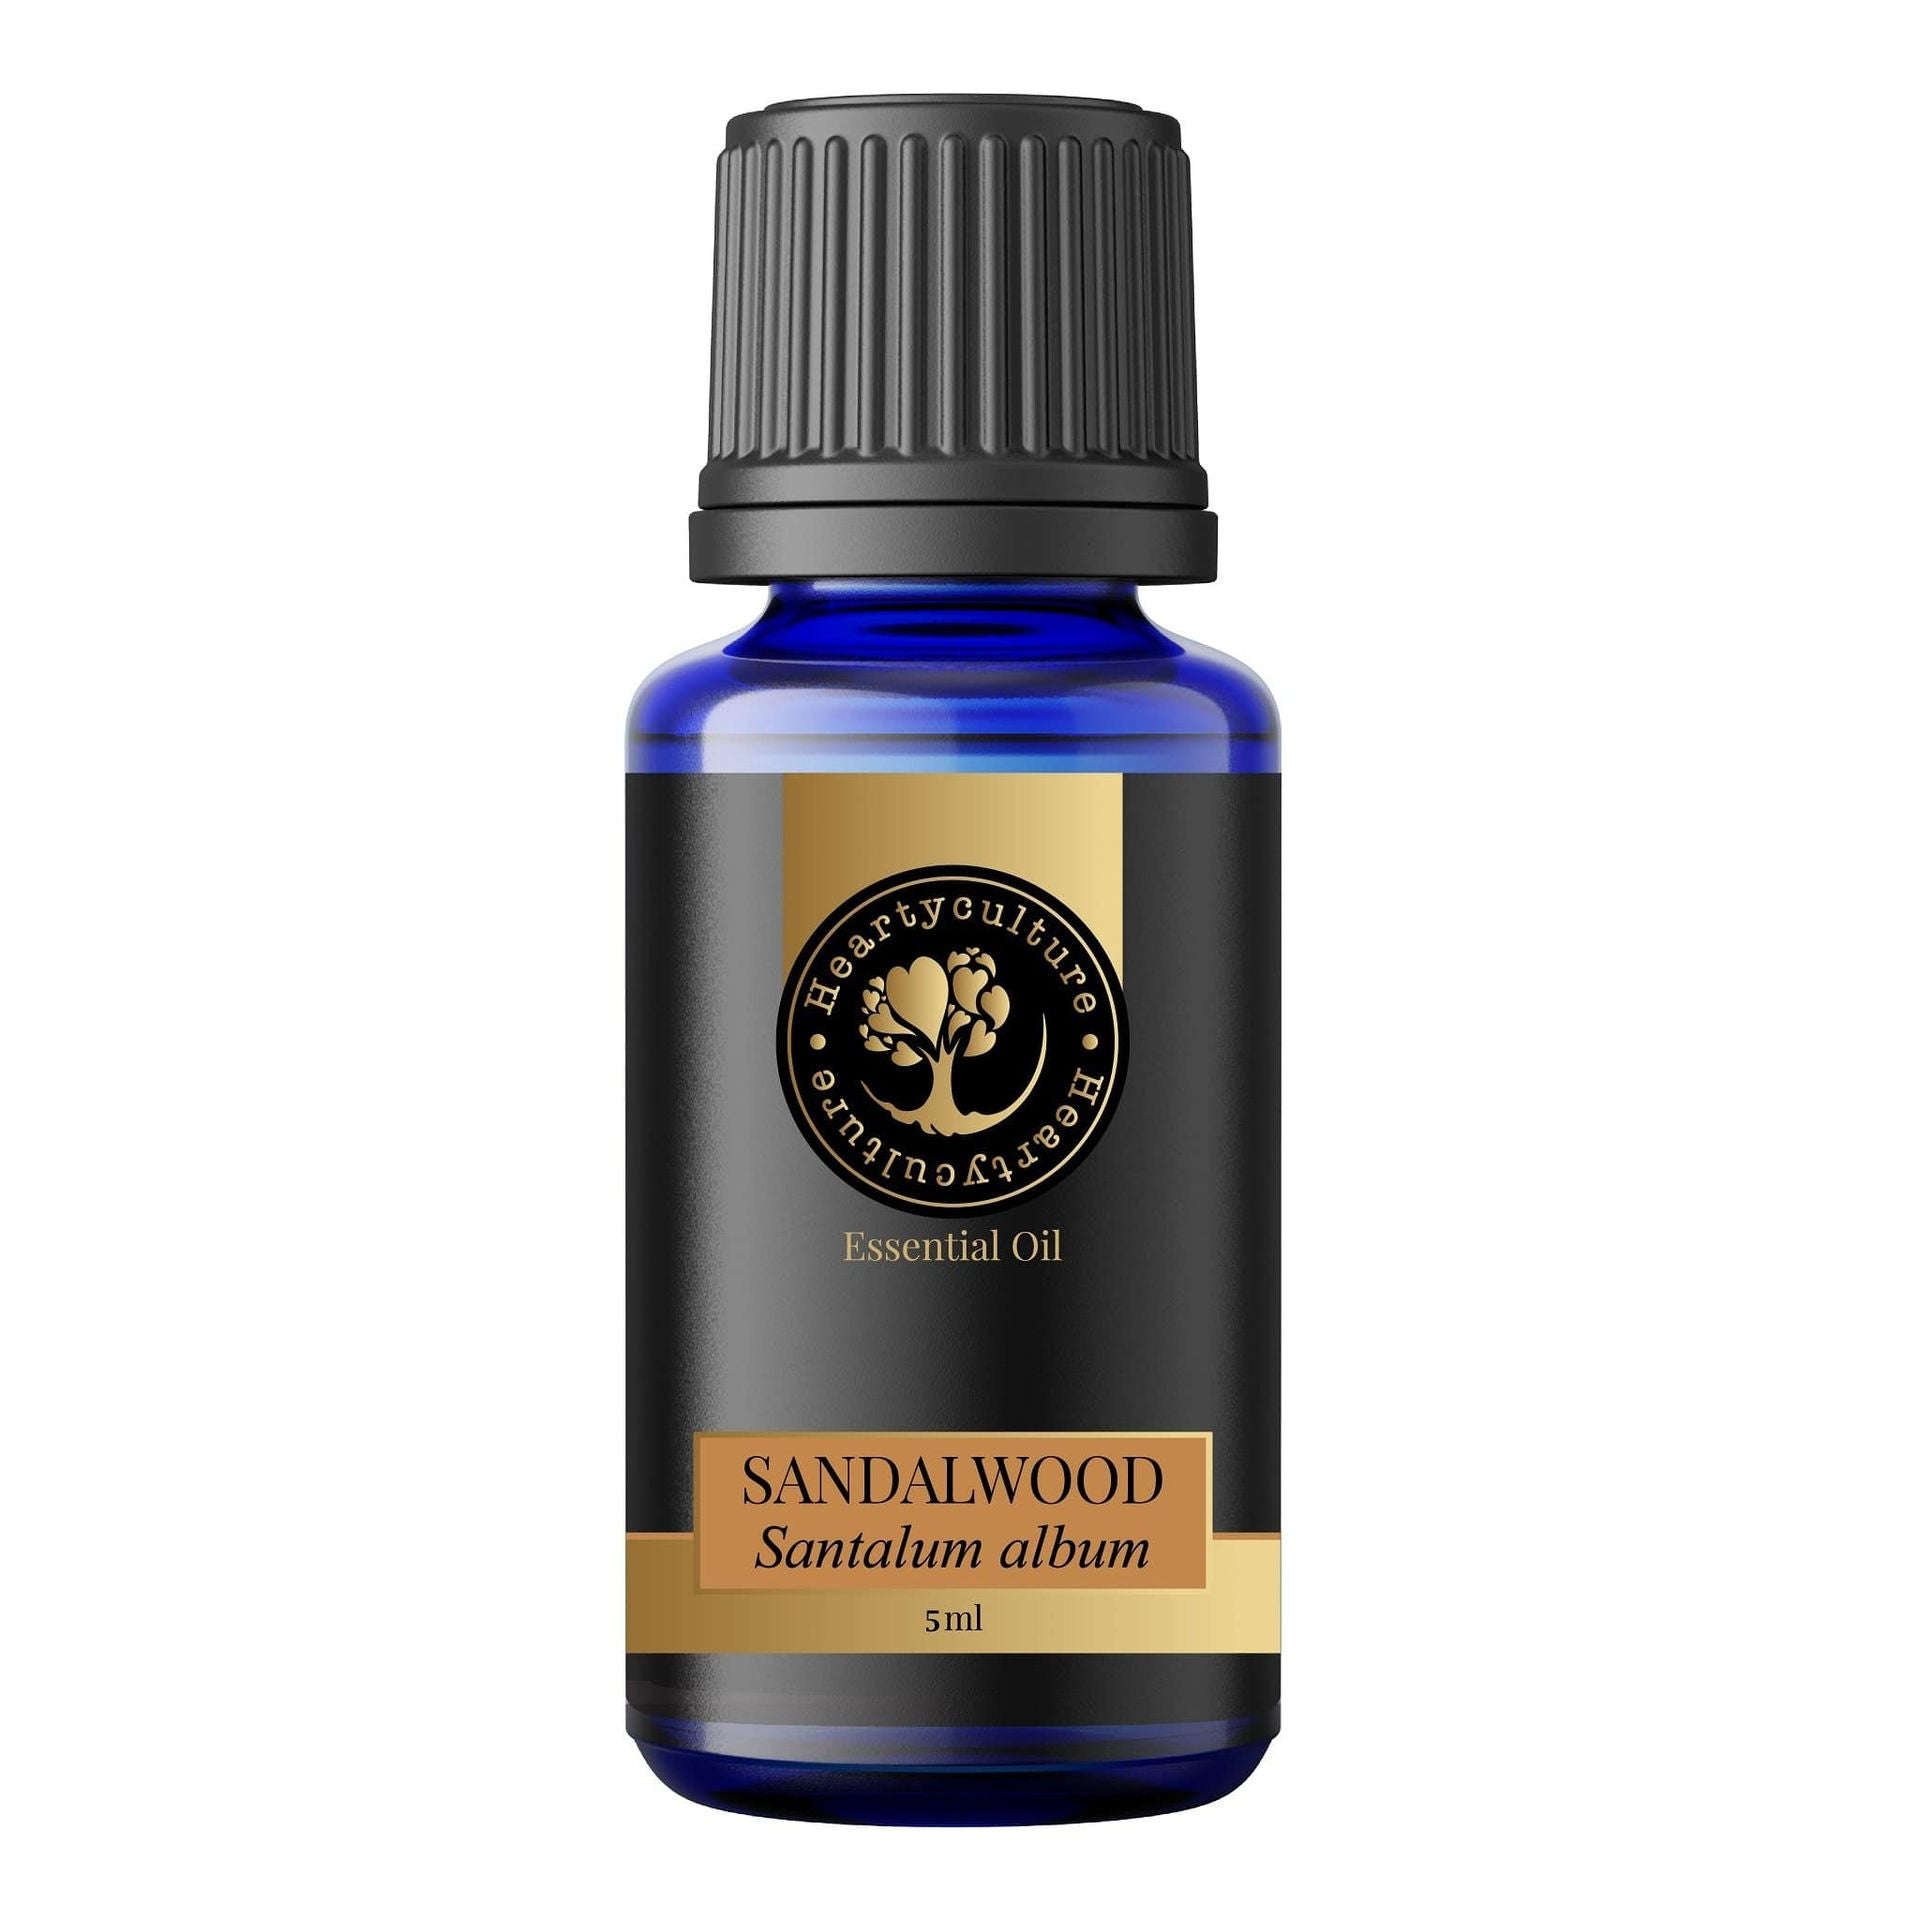 Heartyculture Sandalwood Essential Oil - 5 ml - hfnl!fe